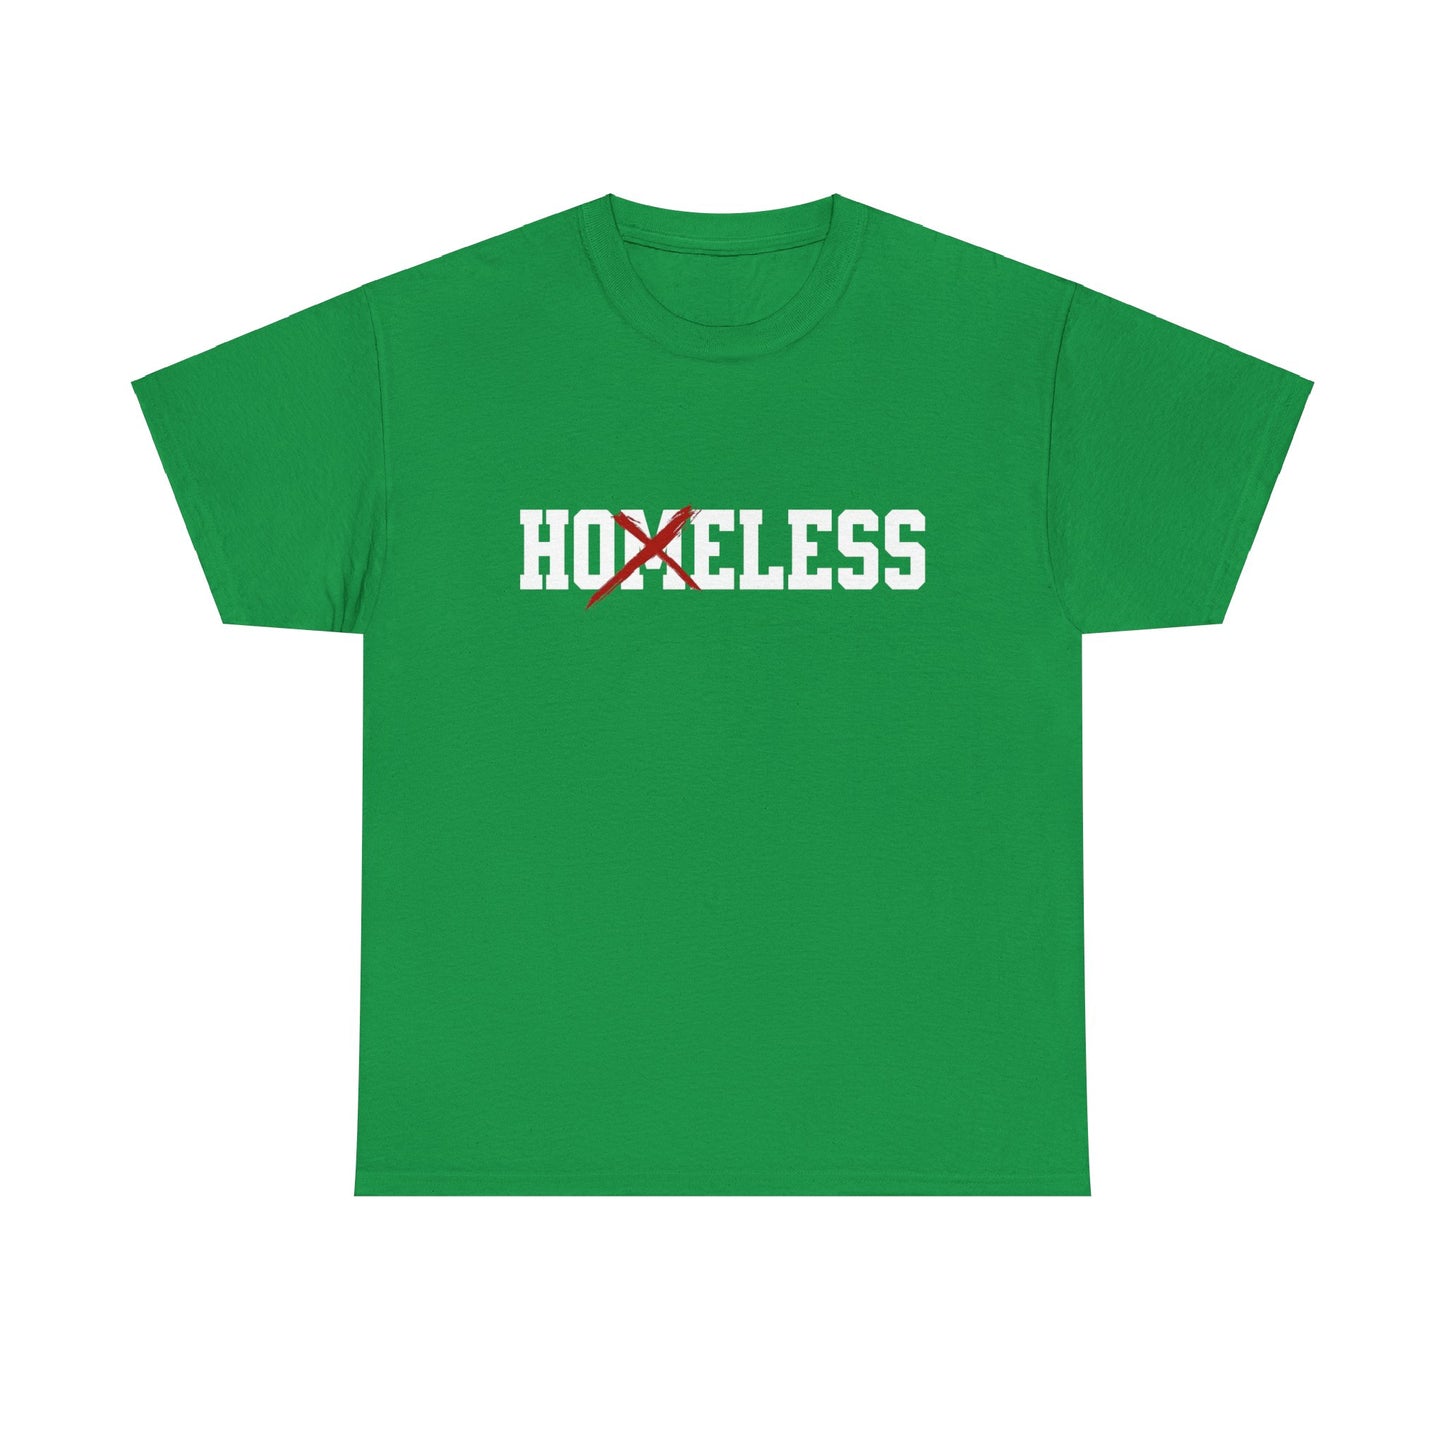 Unisex Shirt in knallgrün mit dem Spruch Homeless drauf. Das M ist durchgestrichen; also steht auf dem Shirt Hoeless.